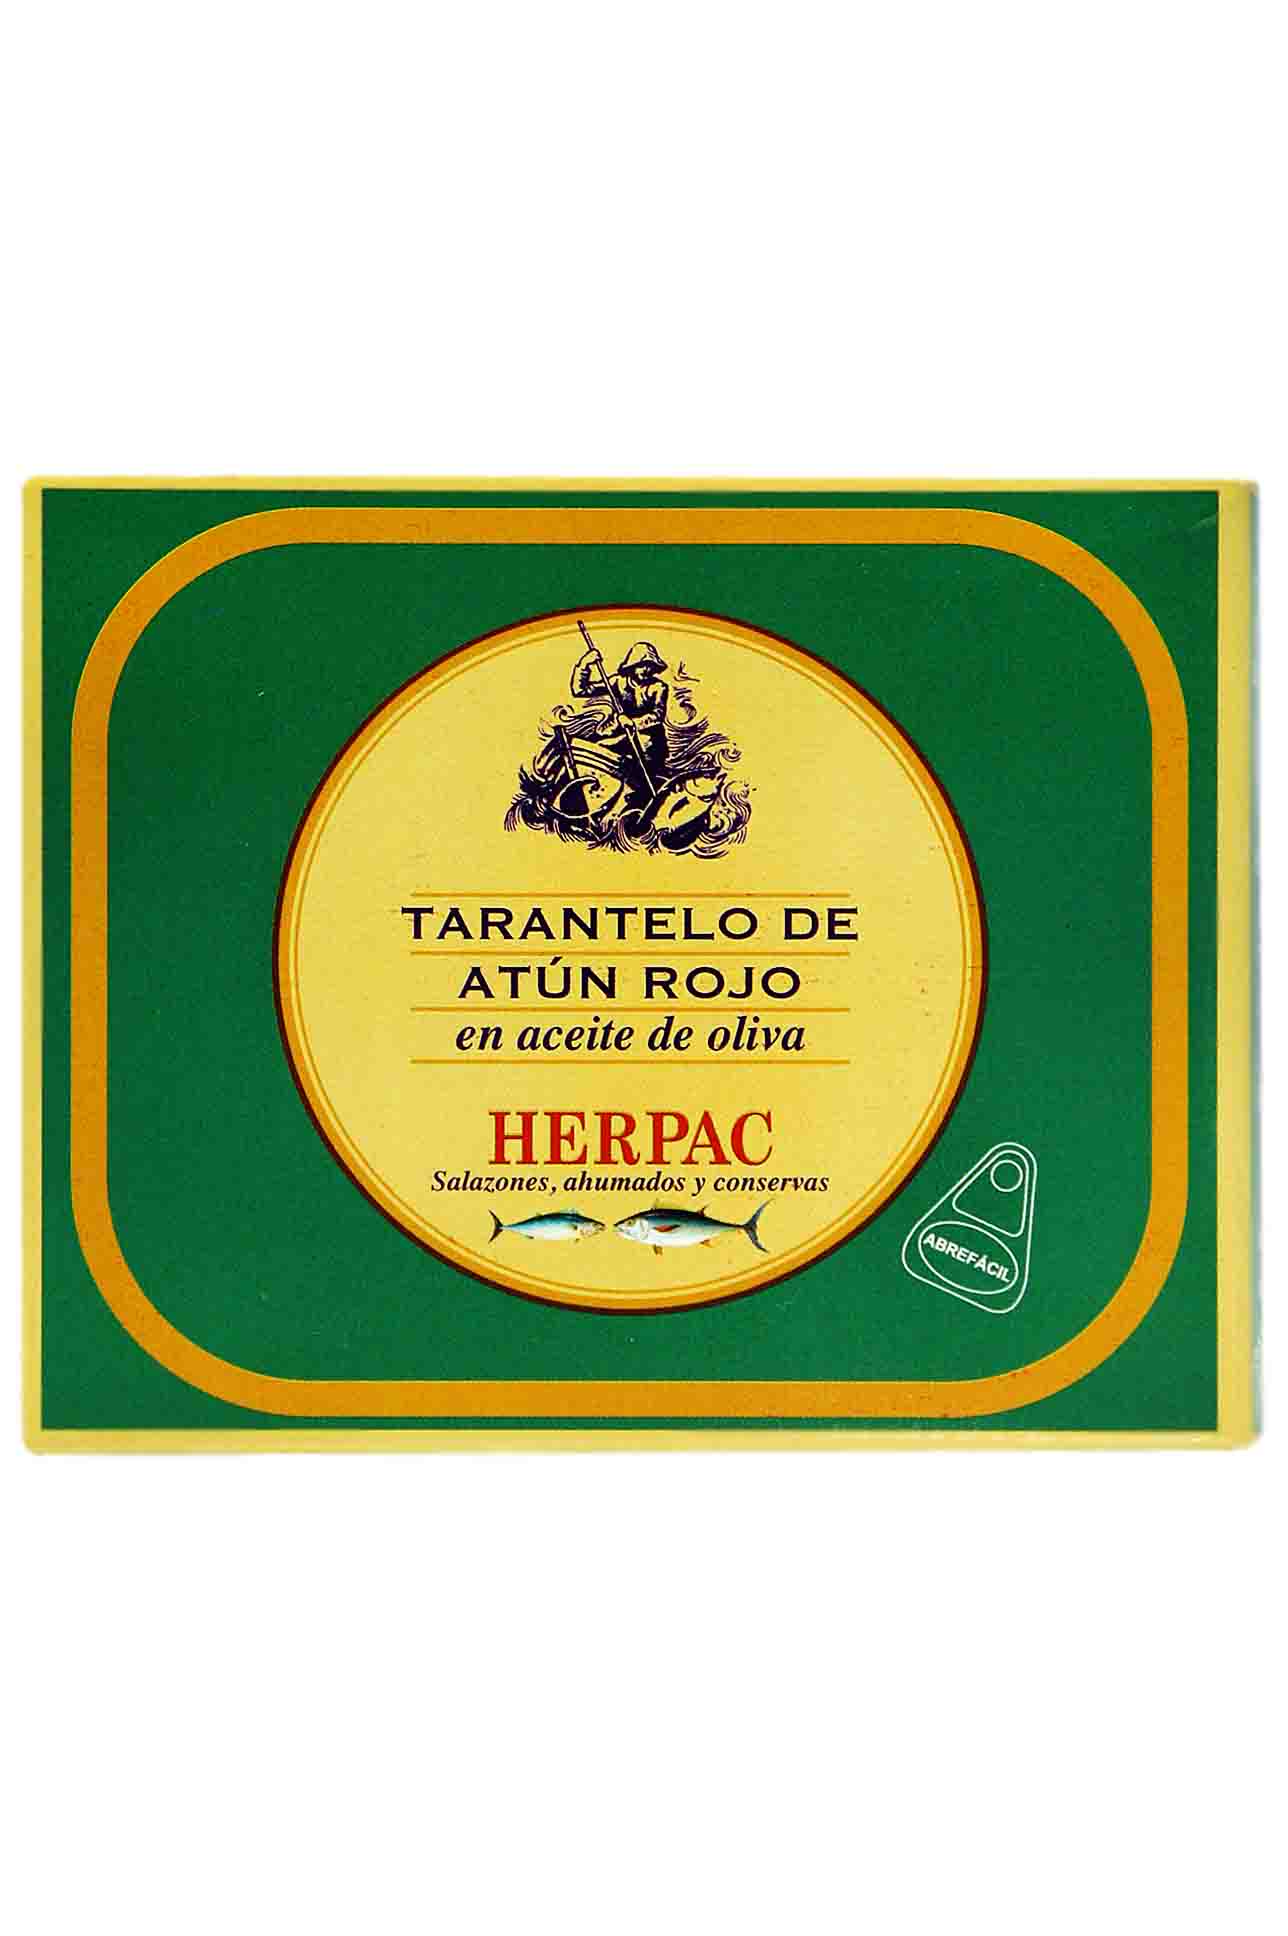 Tarantelo tuna in olive oil